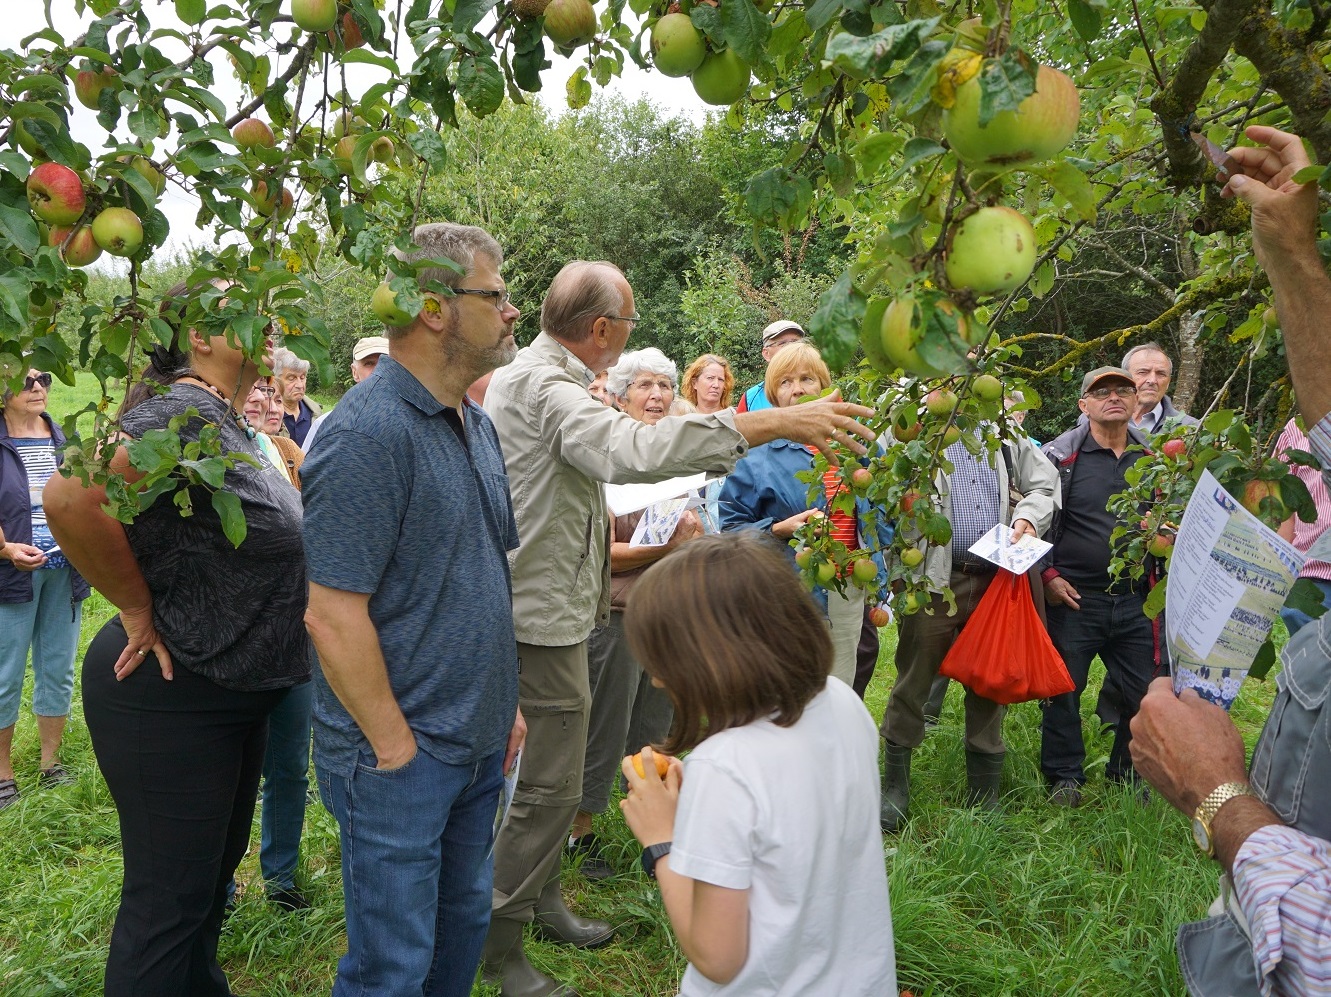 Unser Gartenberater Anton Meier ist mit viel Begeisterung dabei, wenn es um den Apfel und insb. alte Apfelsorten geht. Mit vielen interessanten Geschichten für jung und alt zeigte er den Nutzen einer Streuobstwiese für uns auf.